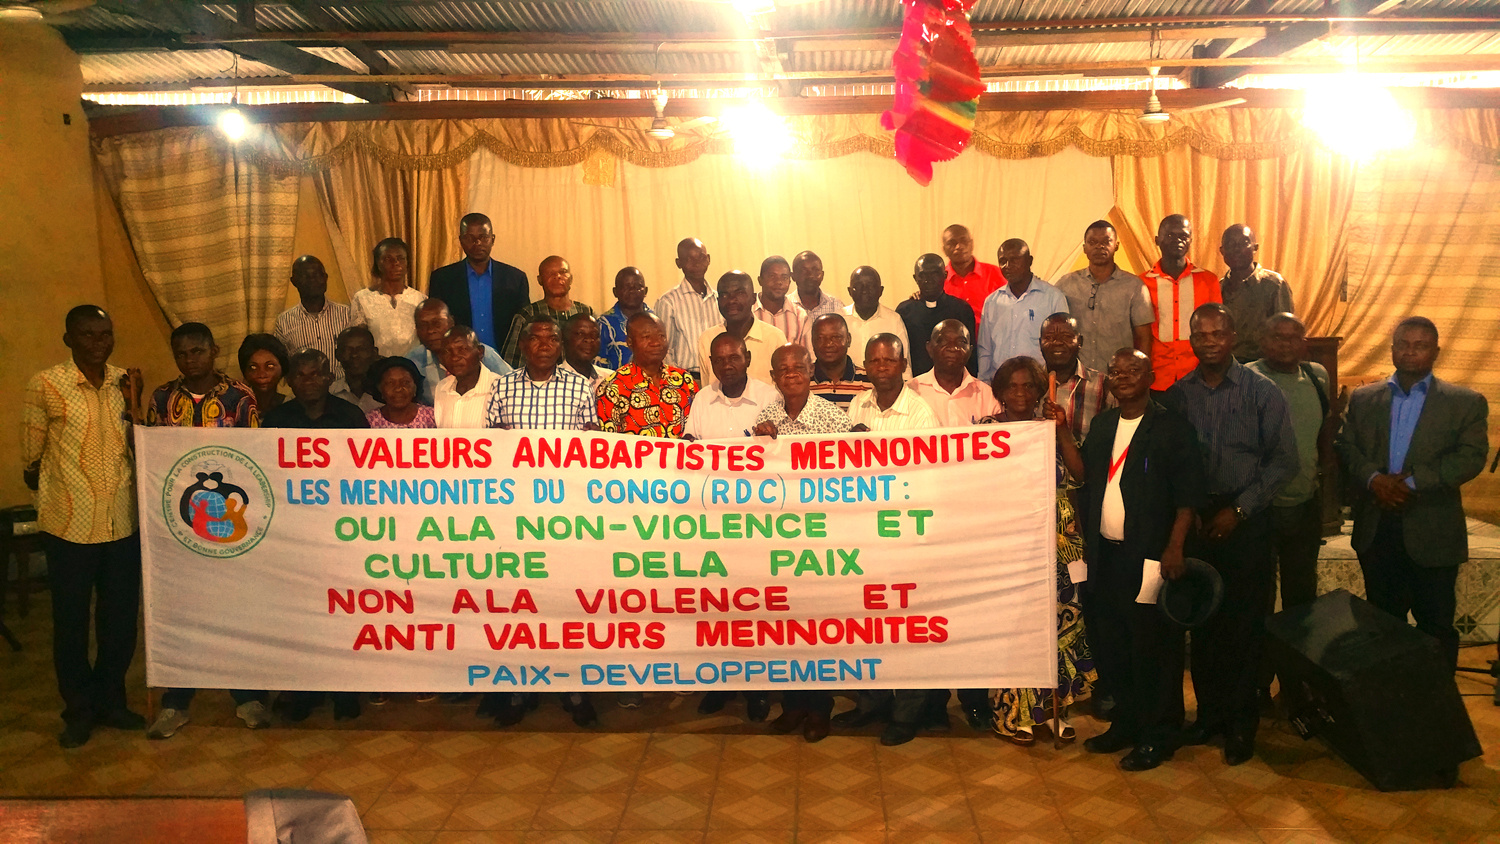 Los participantes discuten ideas y experiencias durante un taller sobre valores menonitas y no violencia en la RD del Congo.